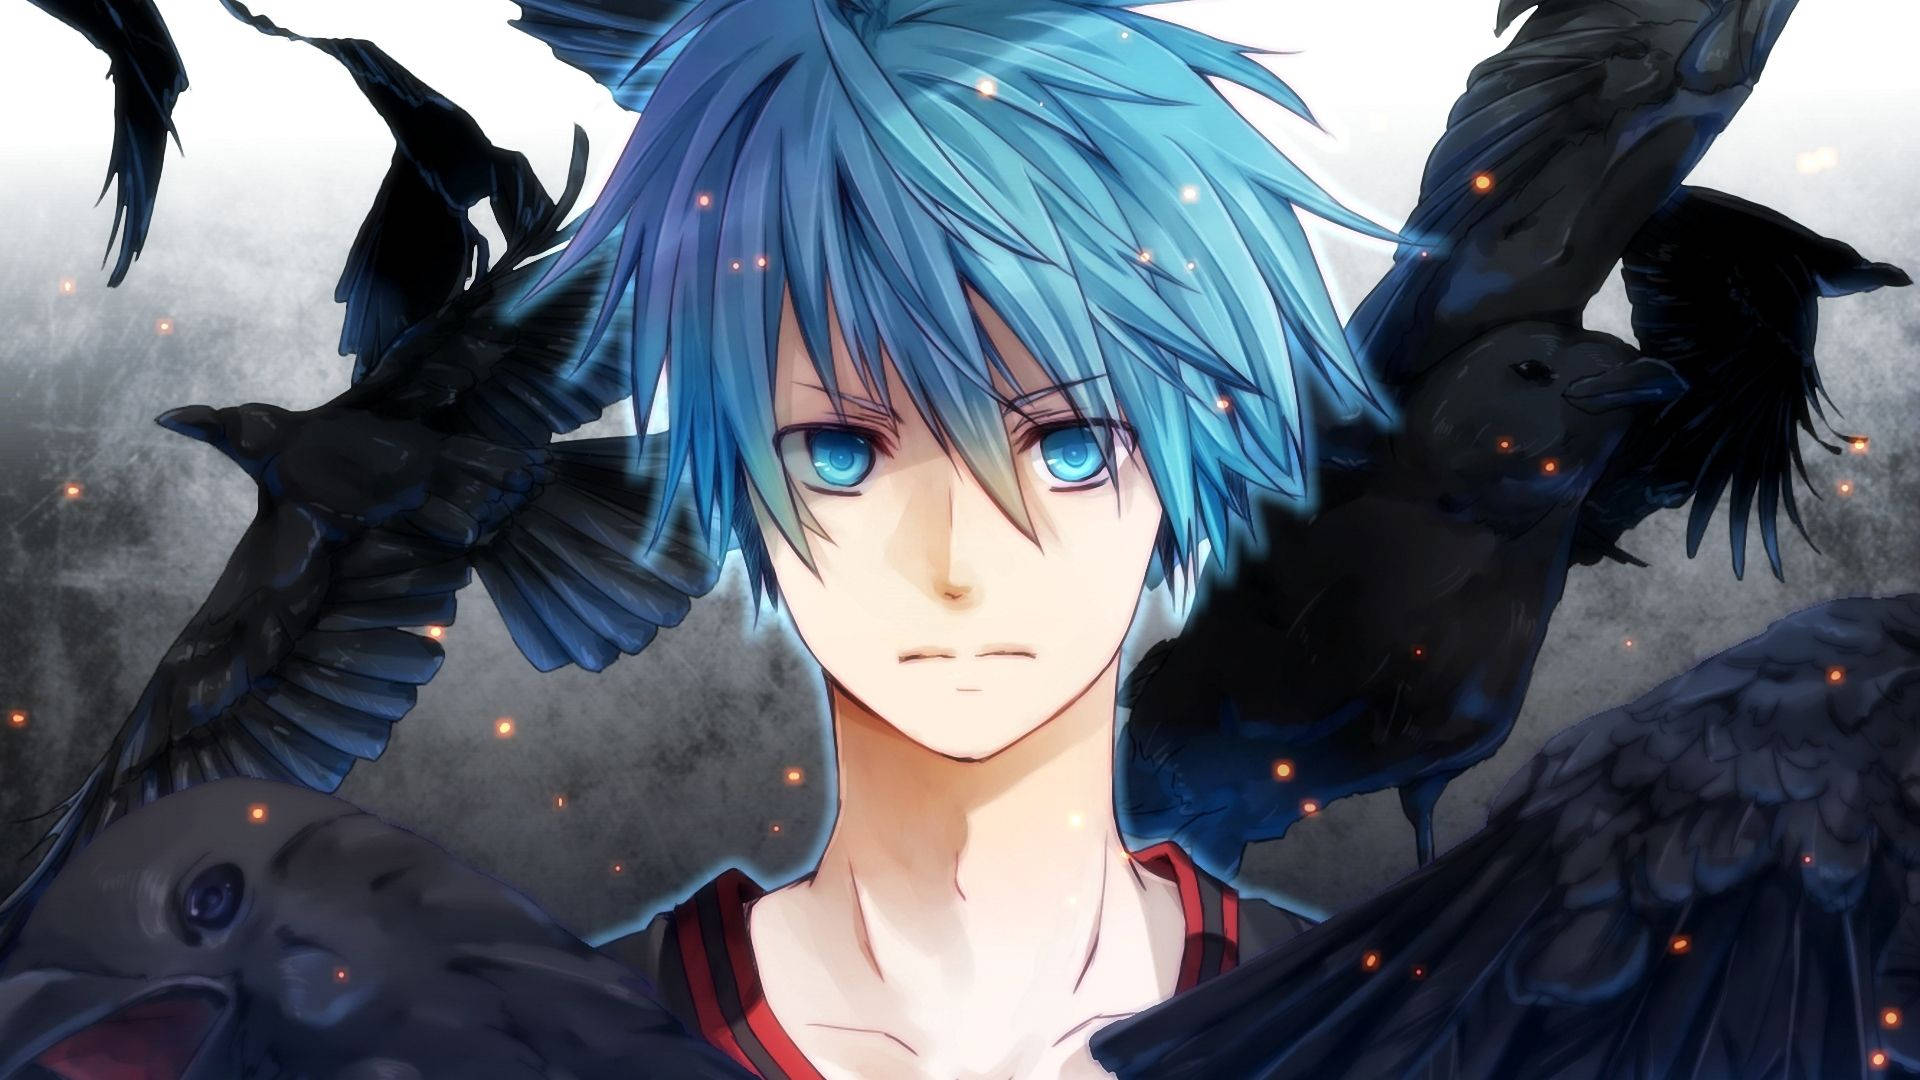 En mystisk blåøjet anime dreng stirrer med en forfærdelig blik. Wallpaper